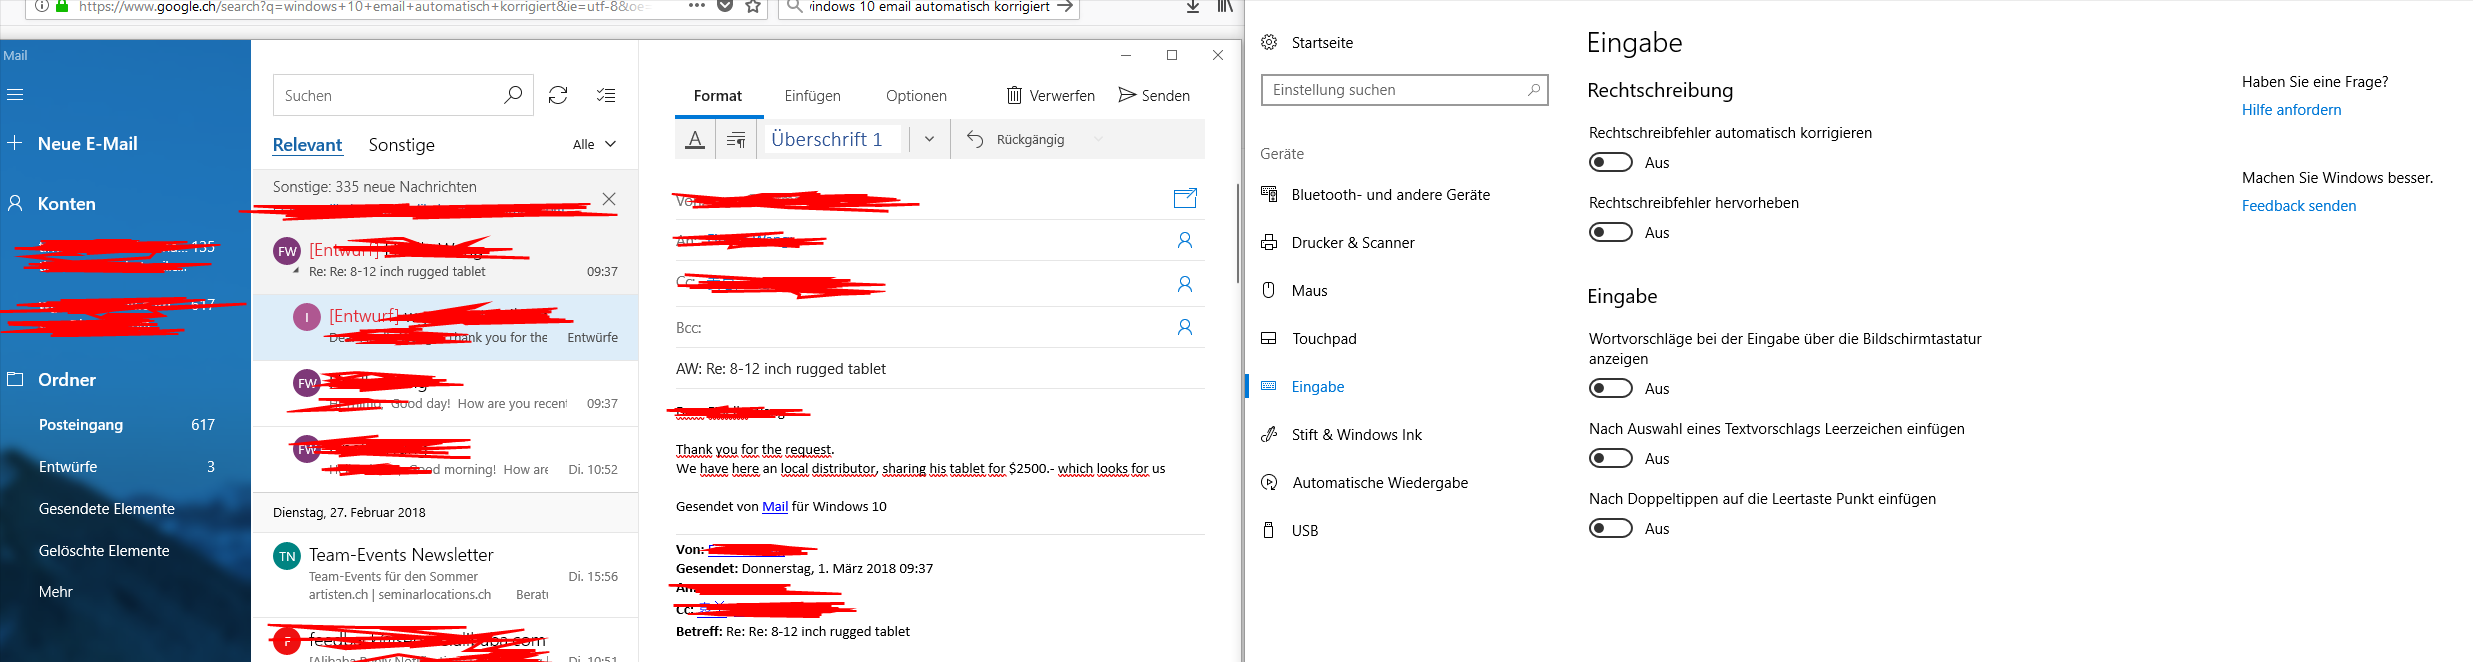 Windows Mail korrigiert Text obwohl Windows 10 Einstellung das verbietet